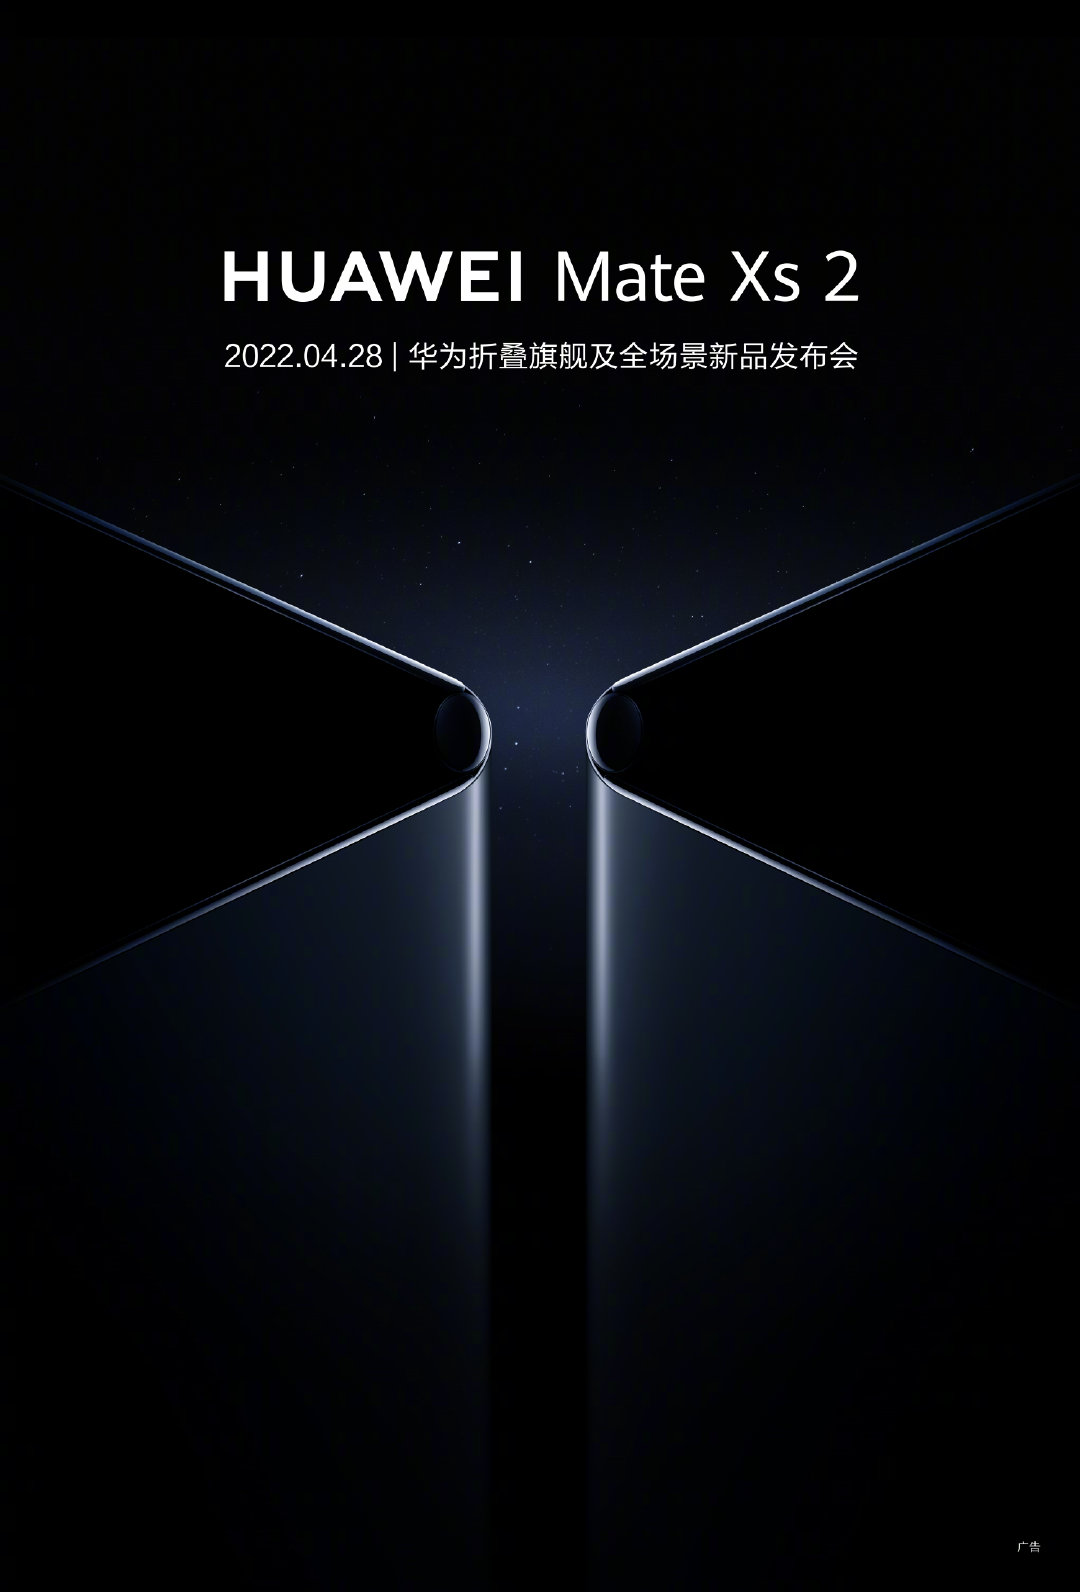 kiedy składany smartfon Huawei Mate Xs 2 cena specyfikacja techniczna data premiery